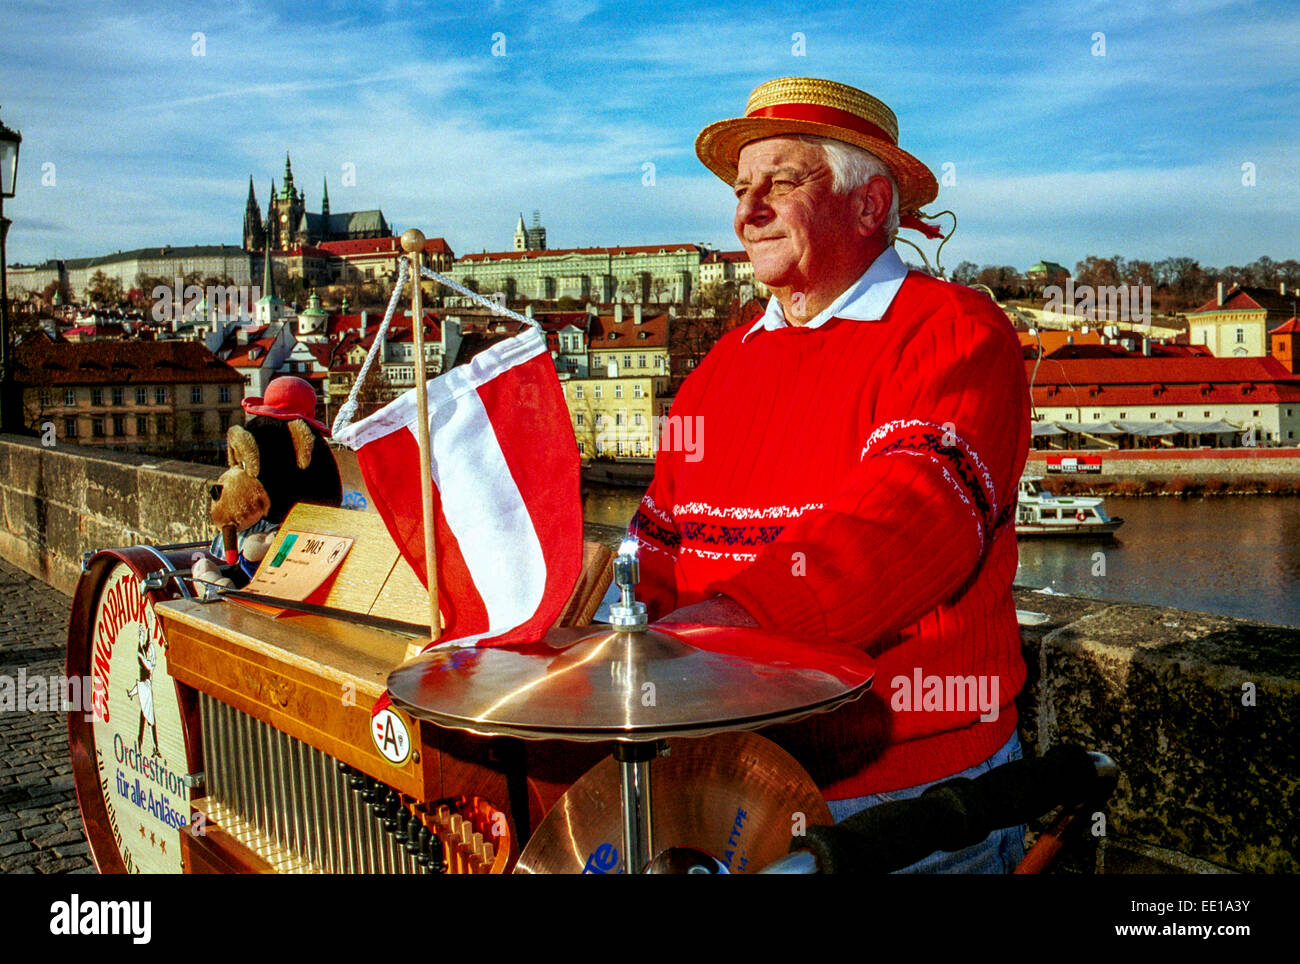 Musicien senior homme jouer sur l'orgue de baril, Charles Bridge Château de Prague République tchèque Europe Busker Street performer Prague musicien Austrian Flag Banque D'Images